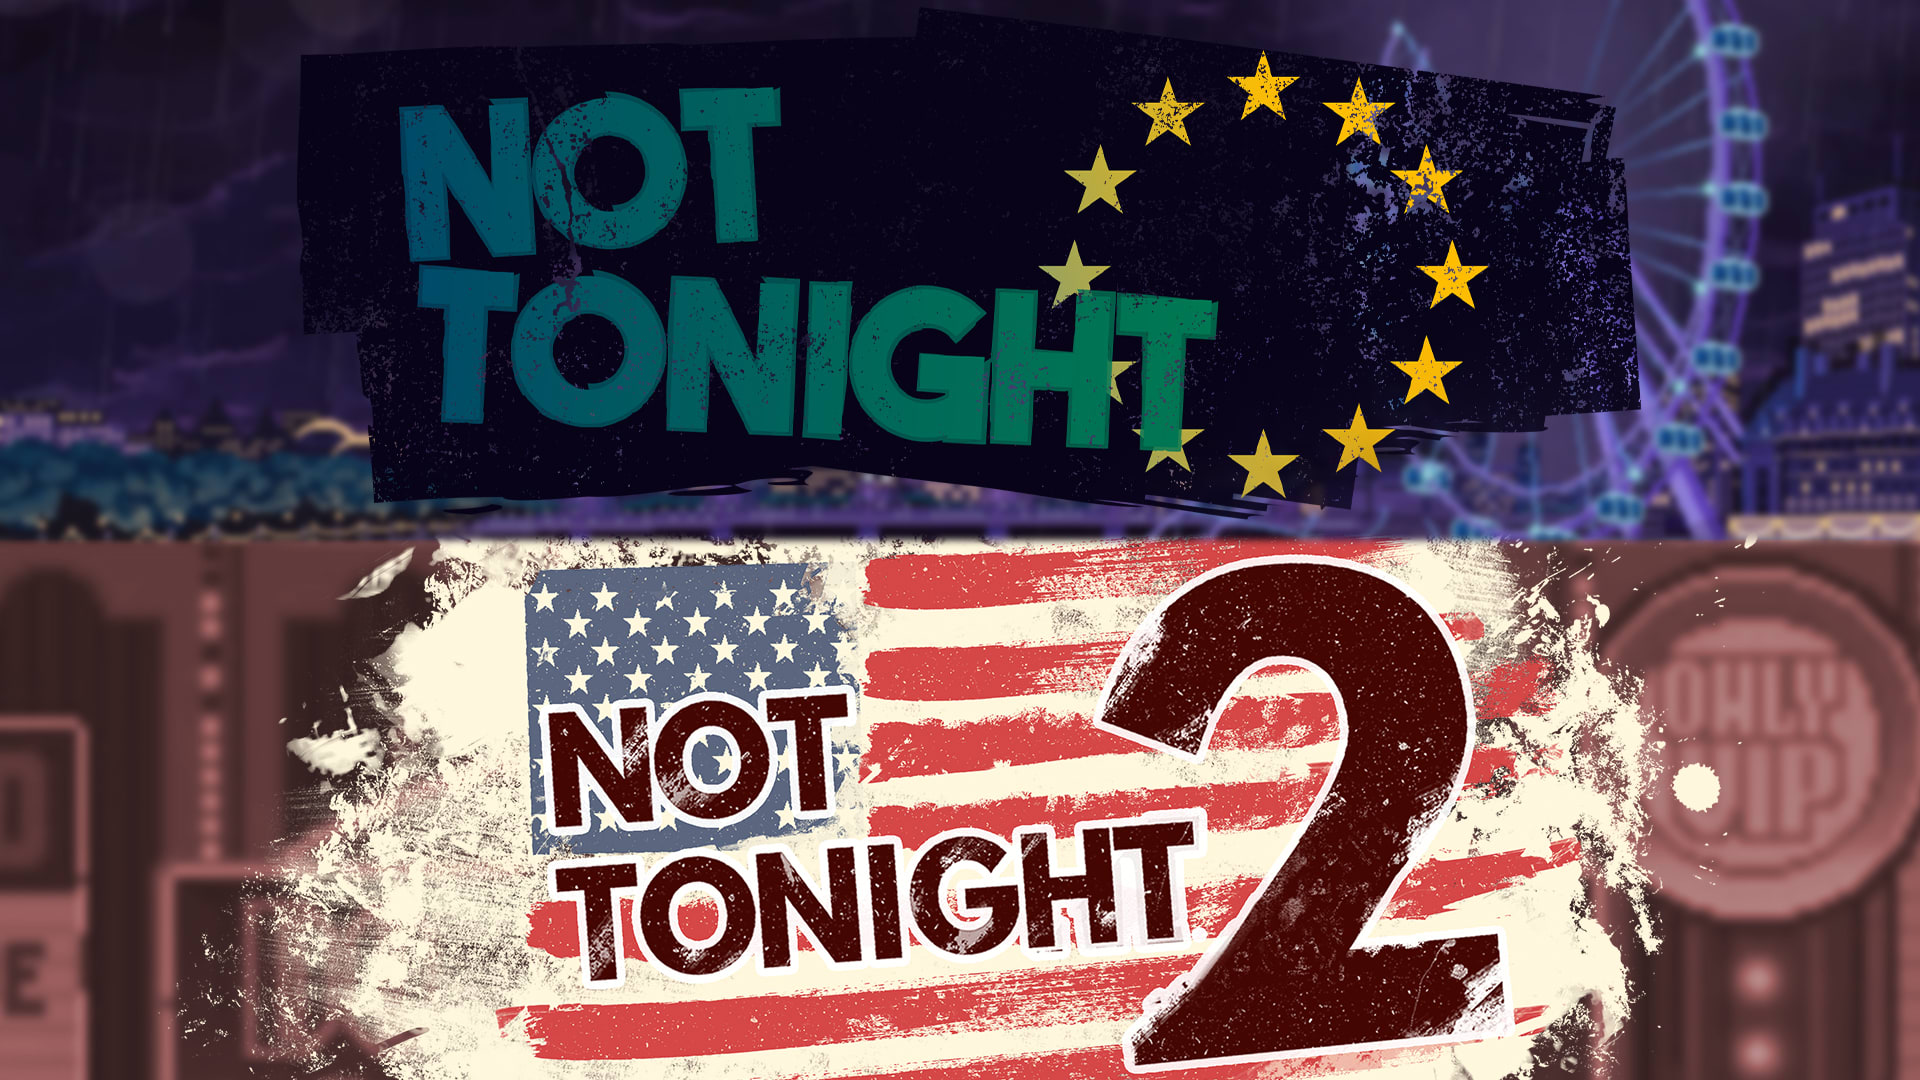 Not Tonight & Not Tonight 2